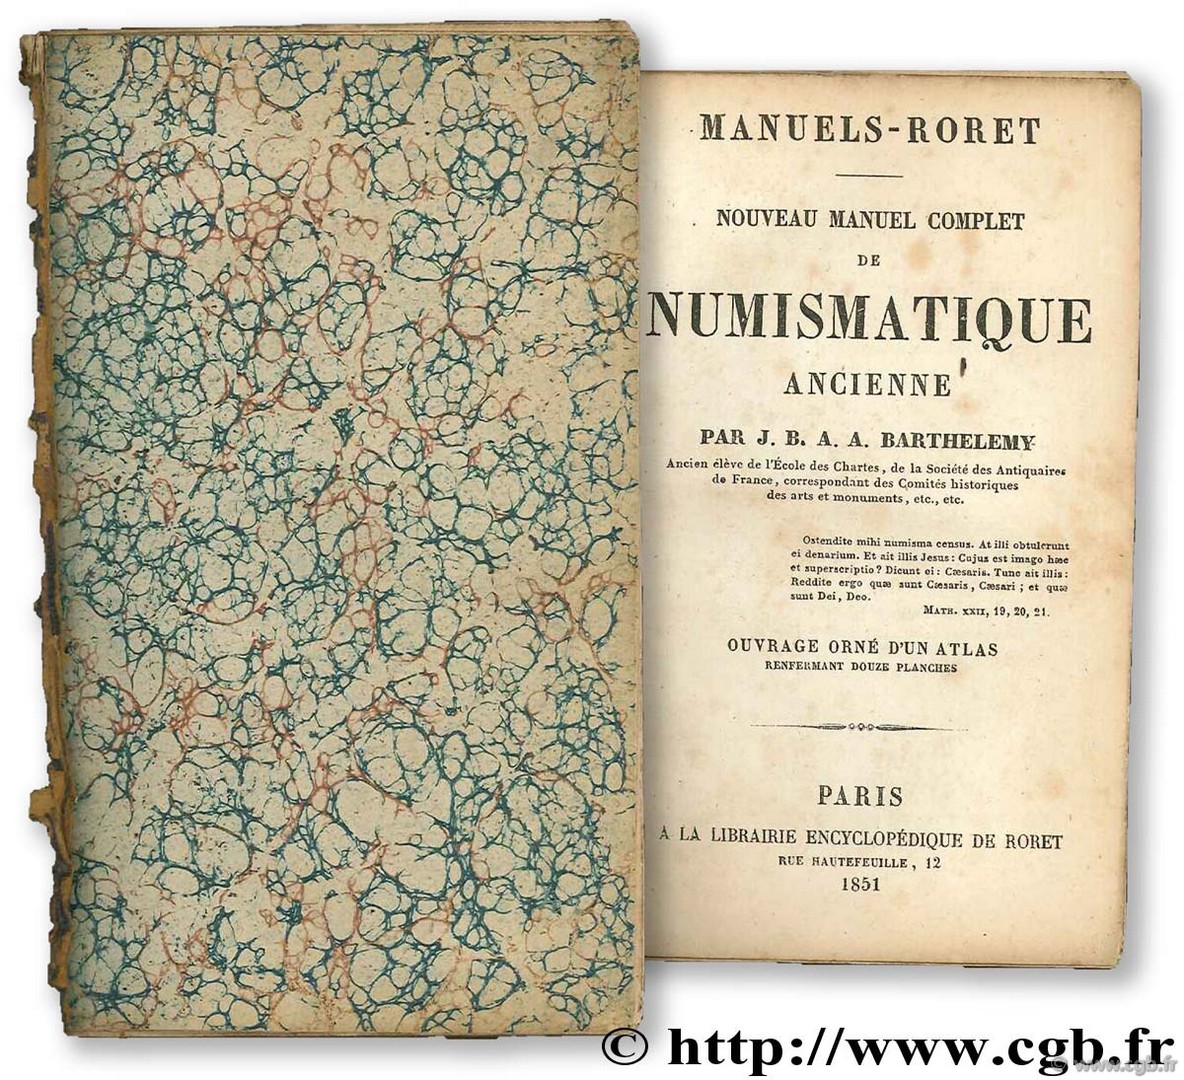 Manuels Roret : nouveau manuel complet de numismatique ancienne DE BARTHELEMY A.